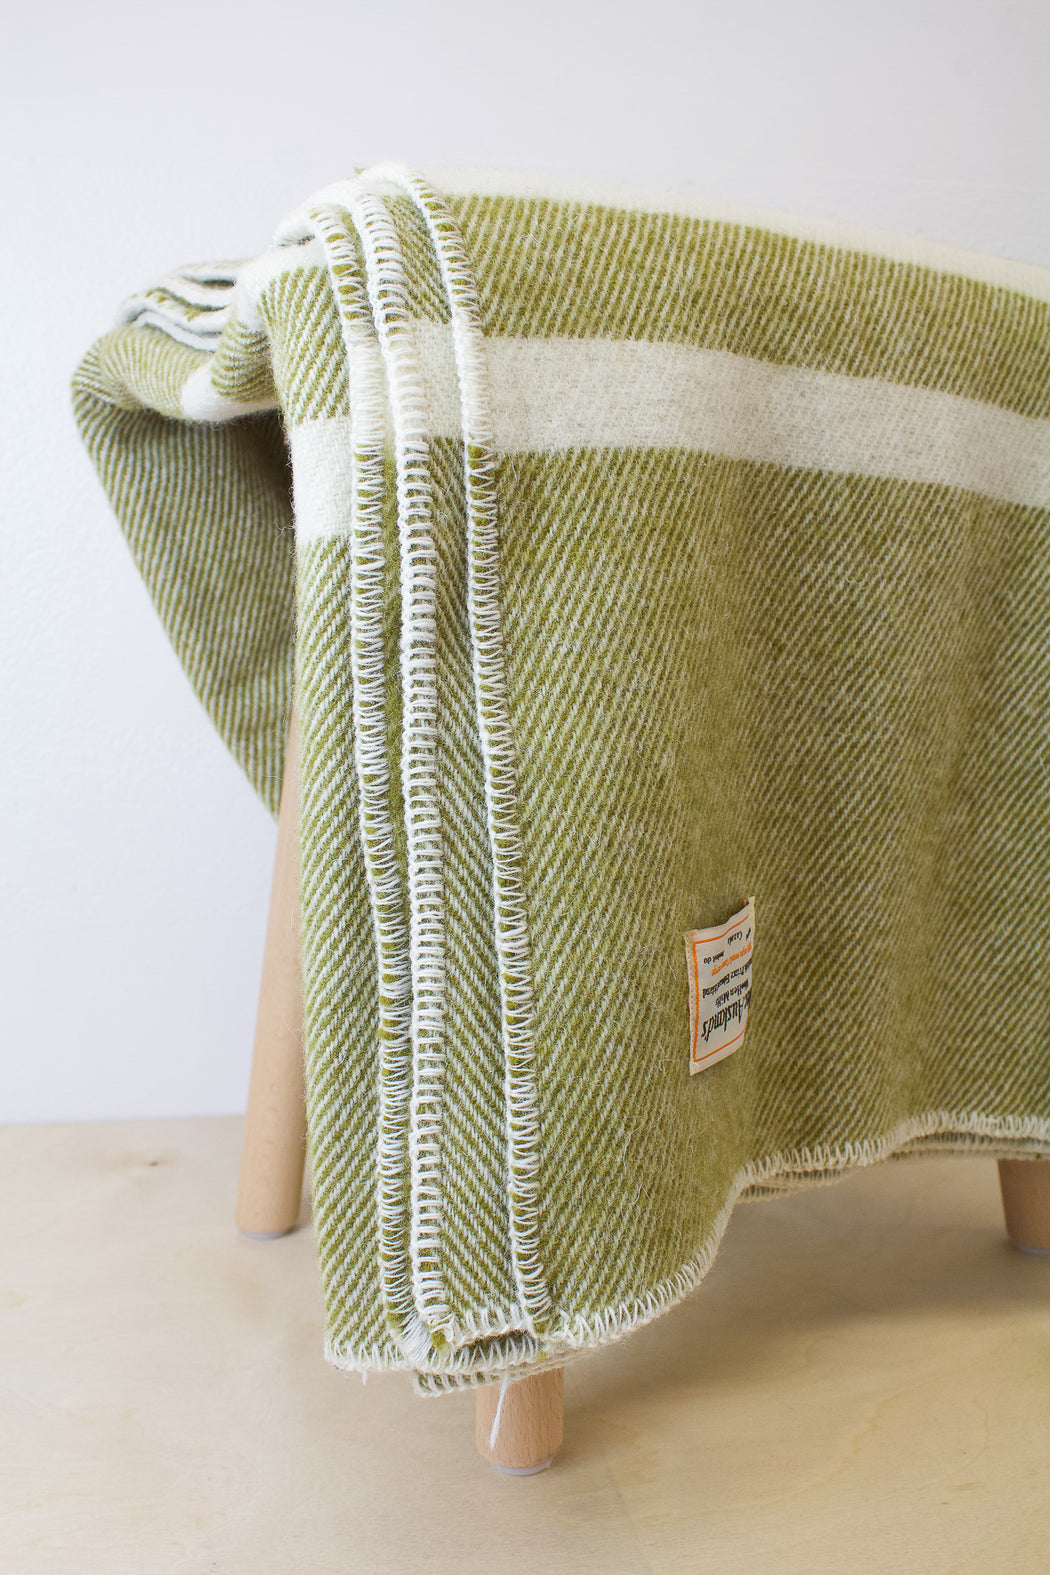 MacAusland- Lap Blanket Tweed